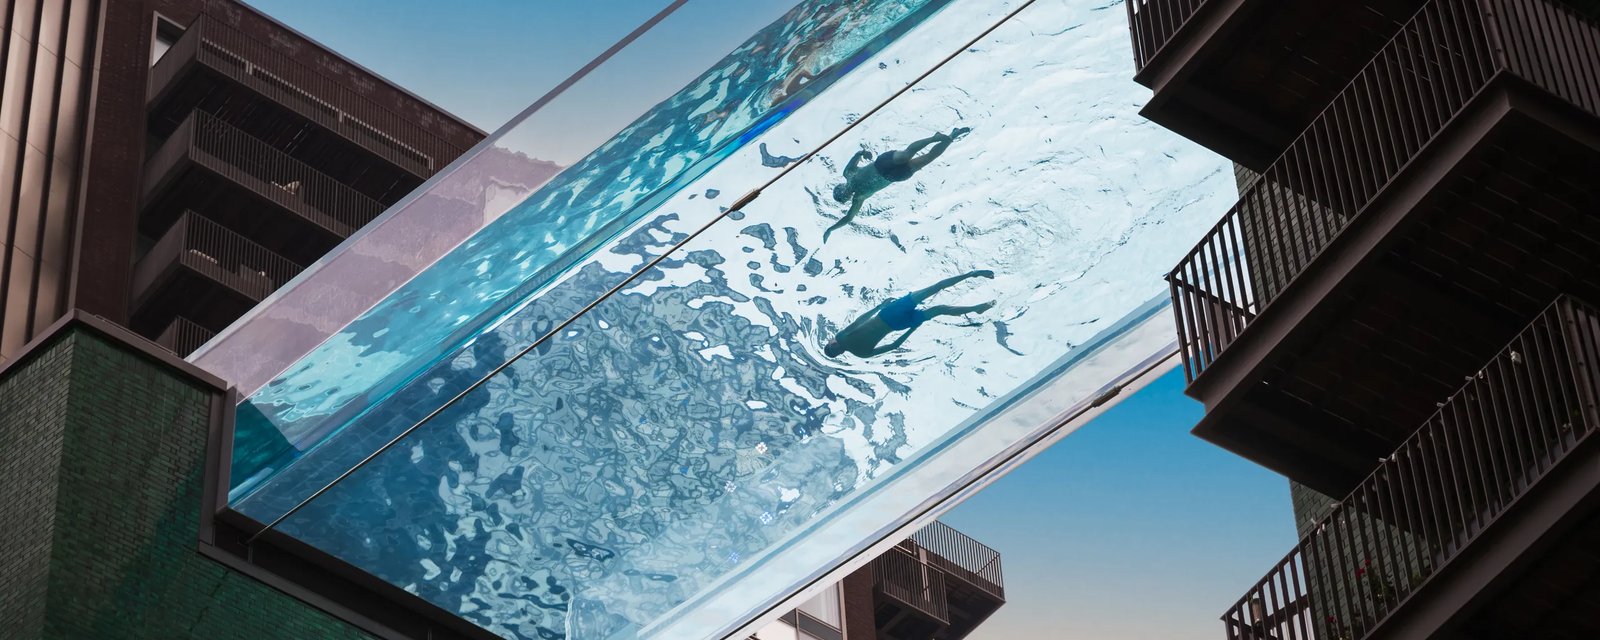 Les 9 piscines les plus cool du monde entier